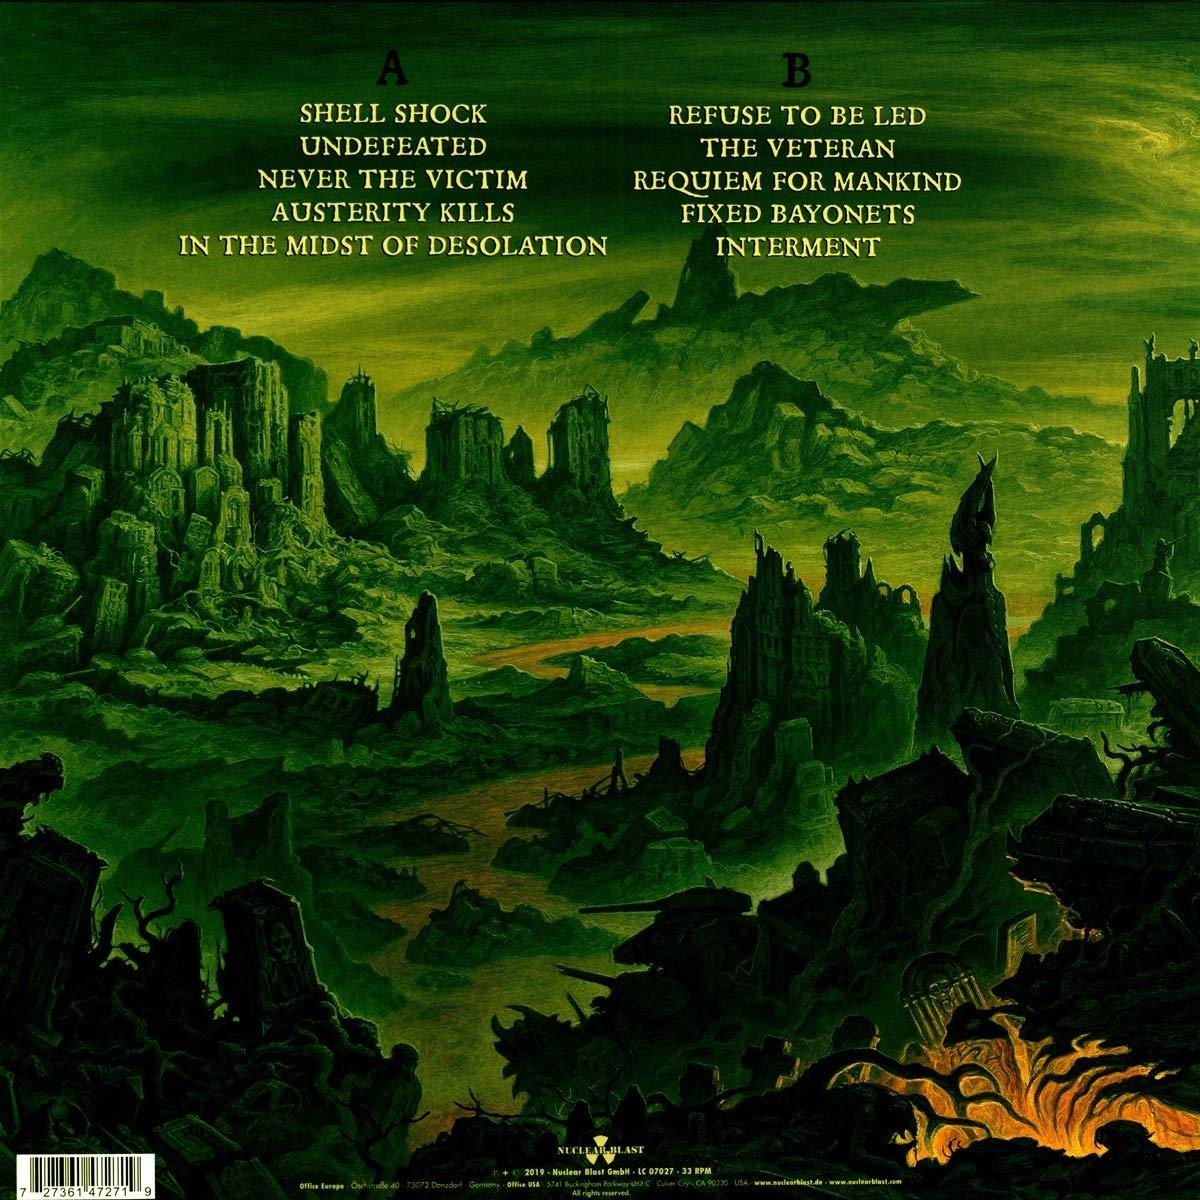 Memoriam for Mankind Requiem - (Vinyl) -